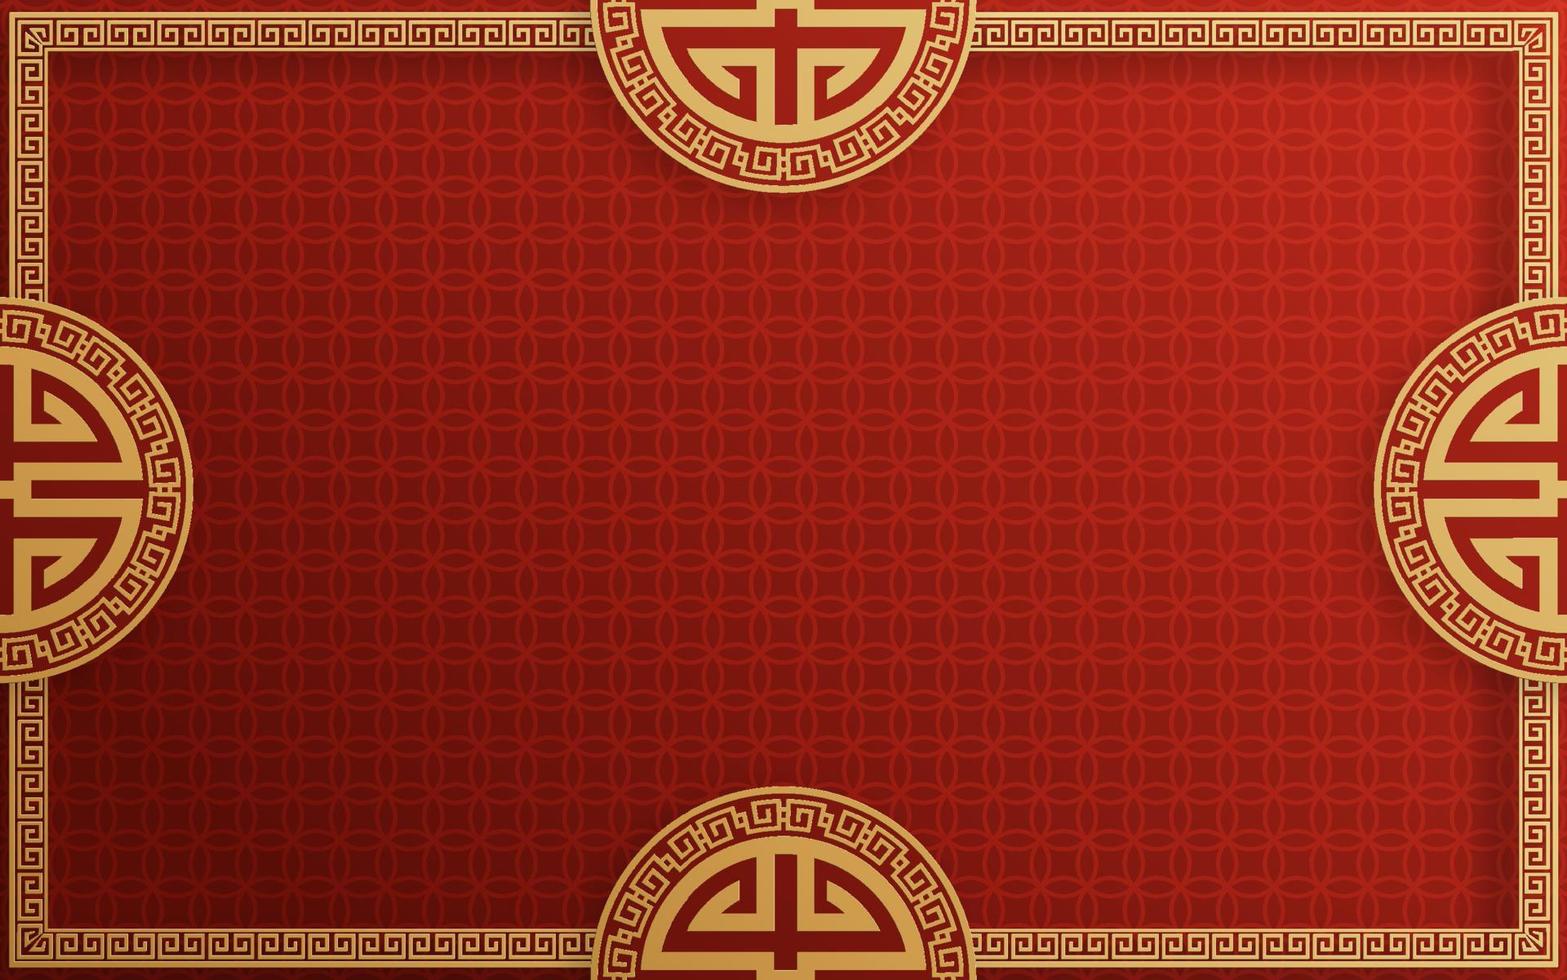 chinesischer rahmenhintergrund rot und goldfarbe mit asiatischen elementen. vektor